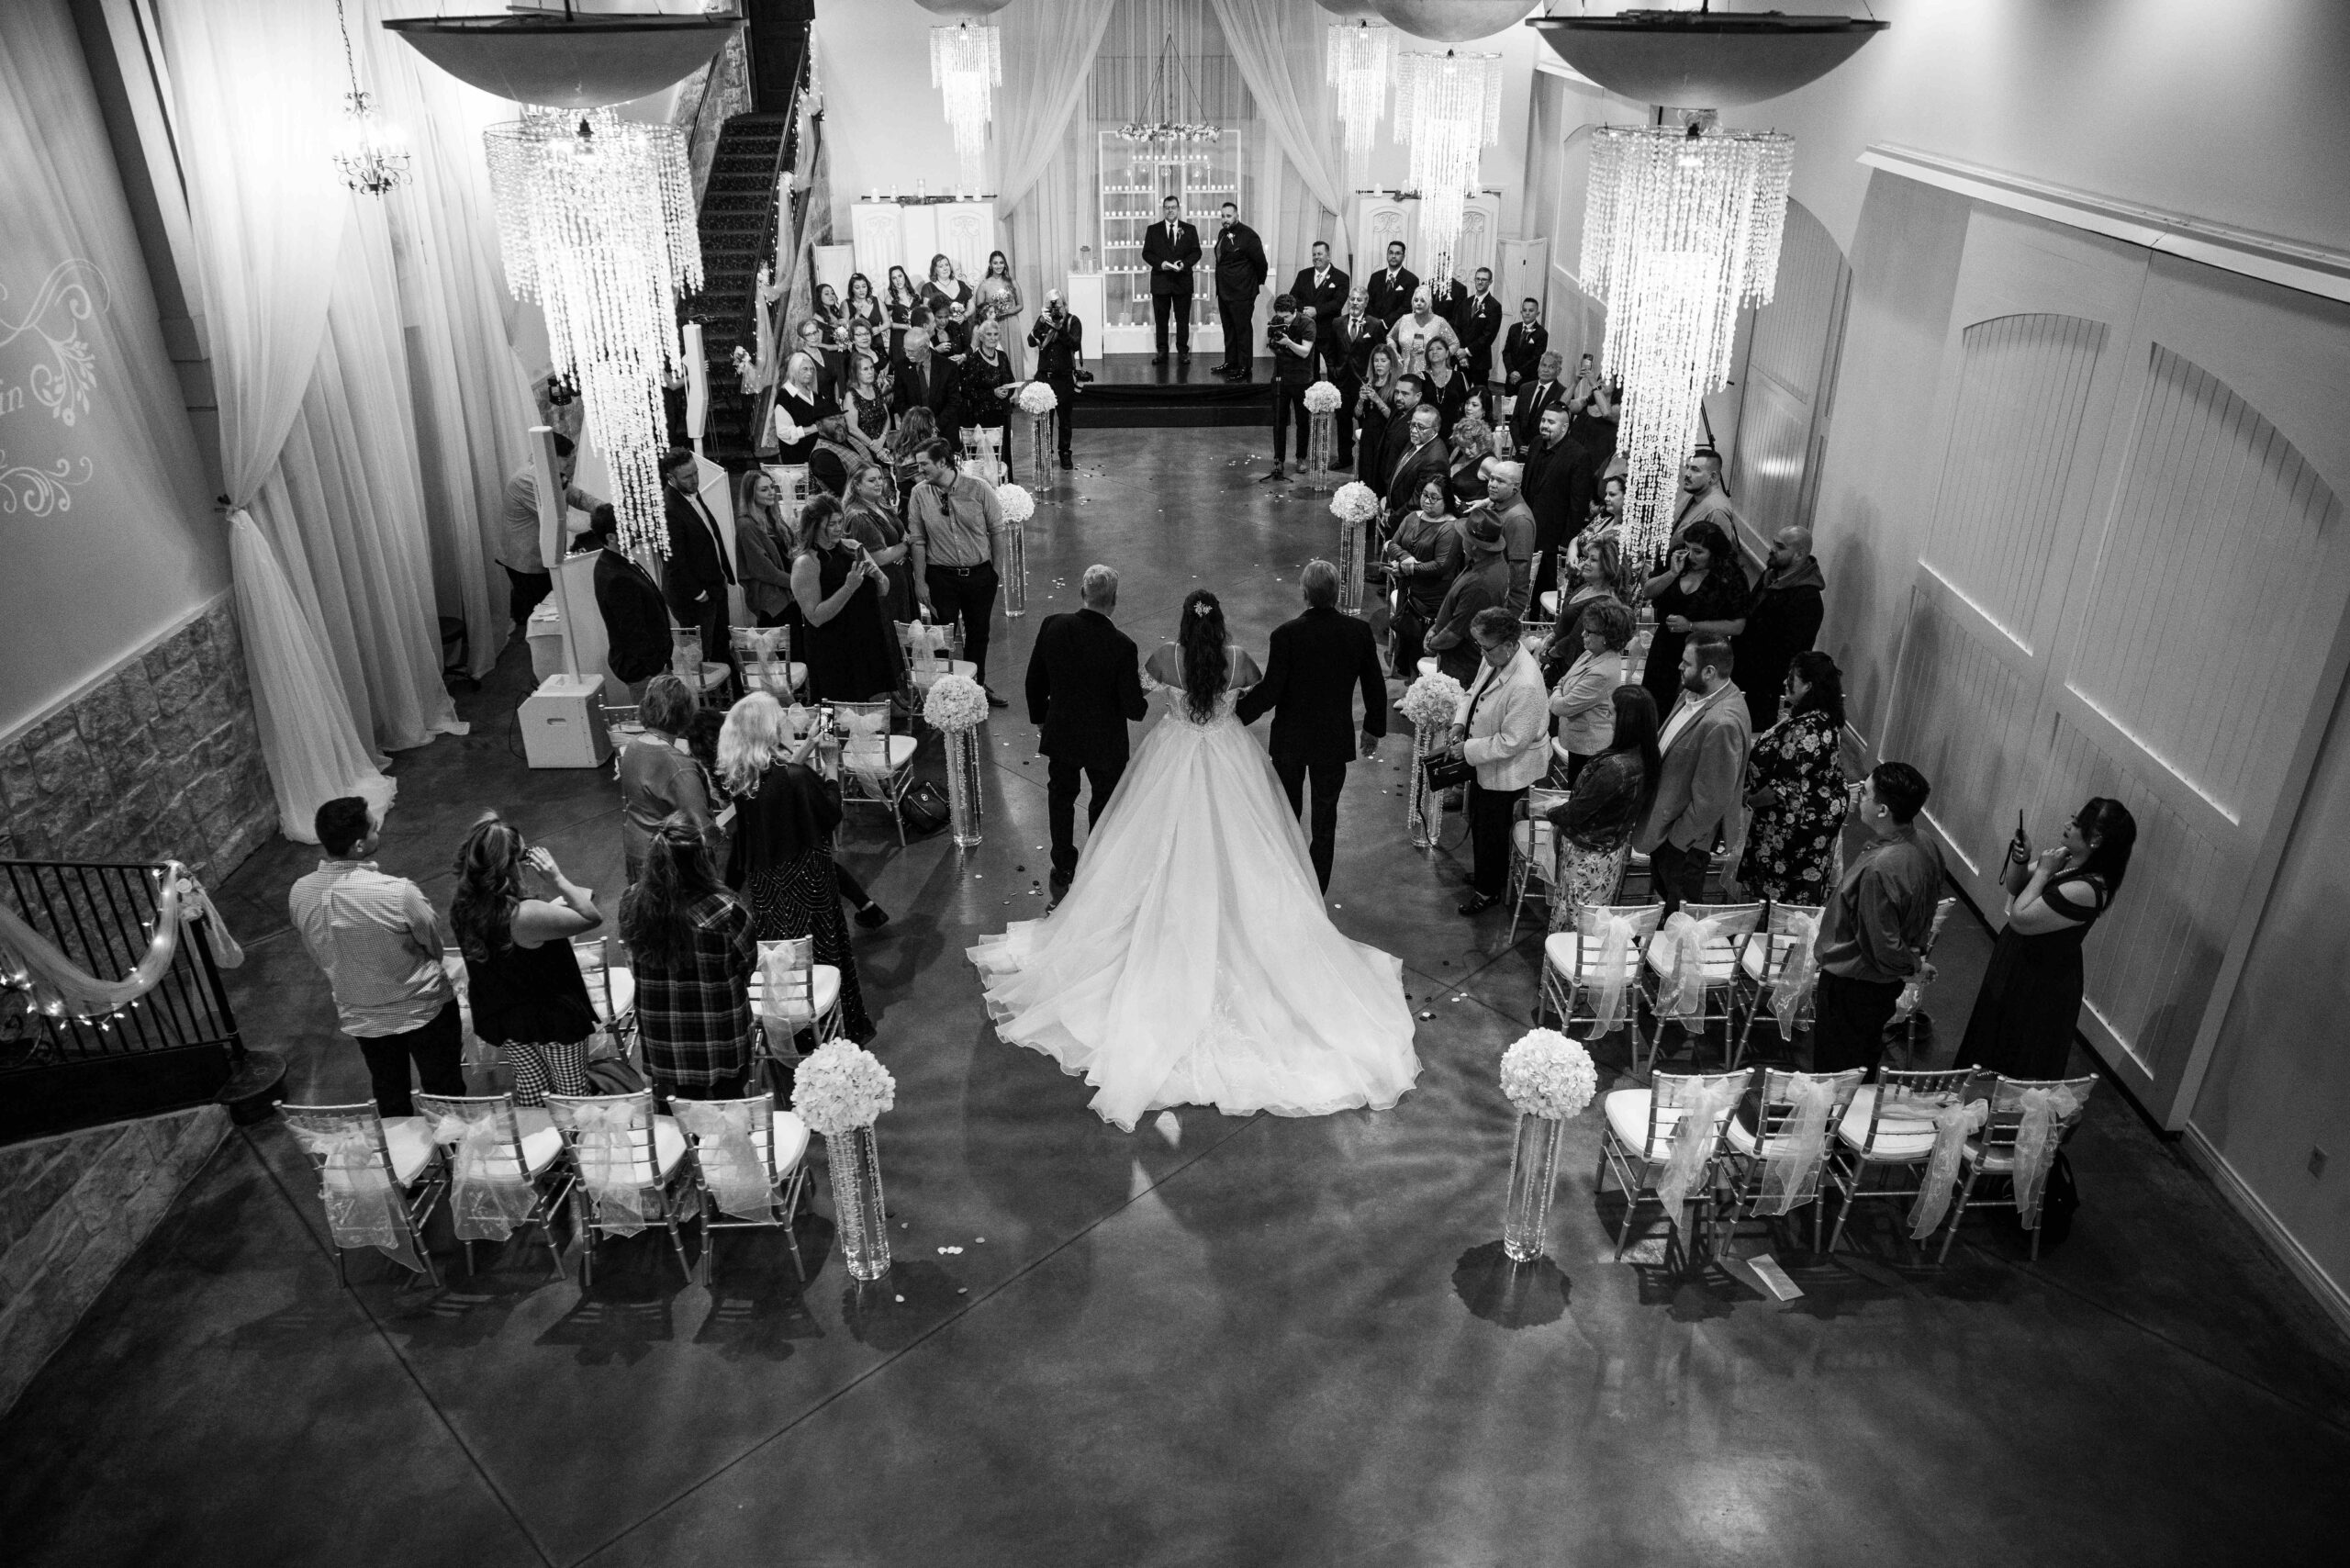 Indoor Wedding Ceremony with Chandeliers